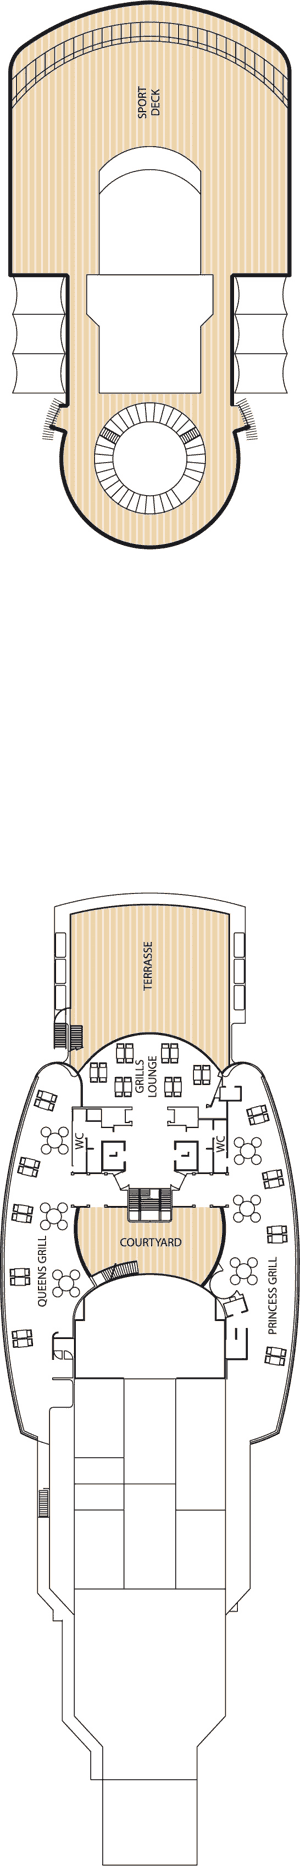 Queen Victoria - Decksplan Deck 11